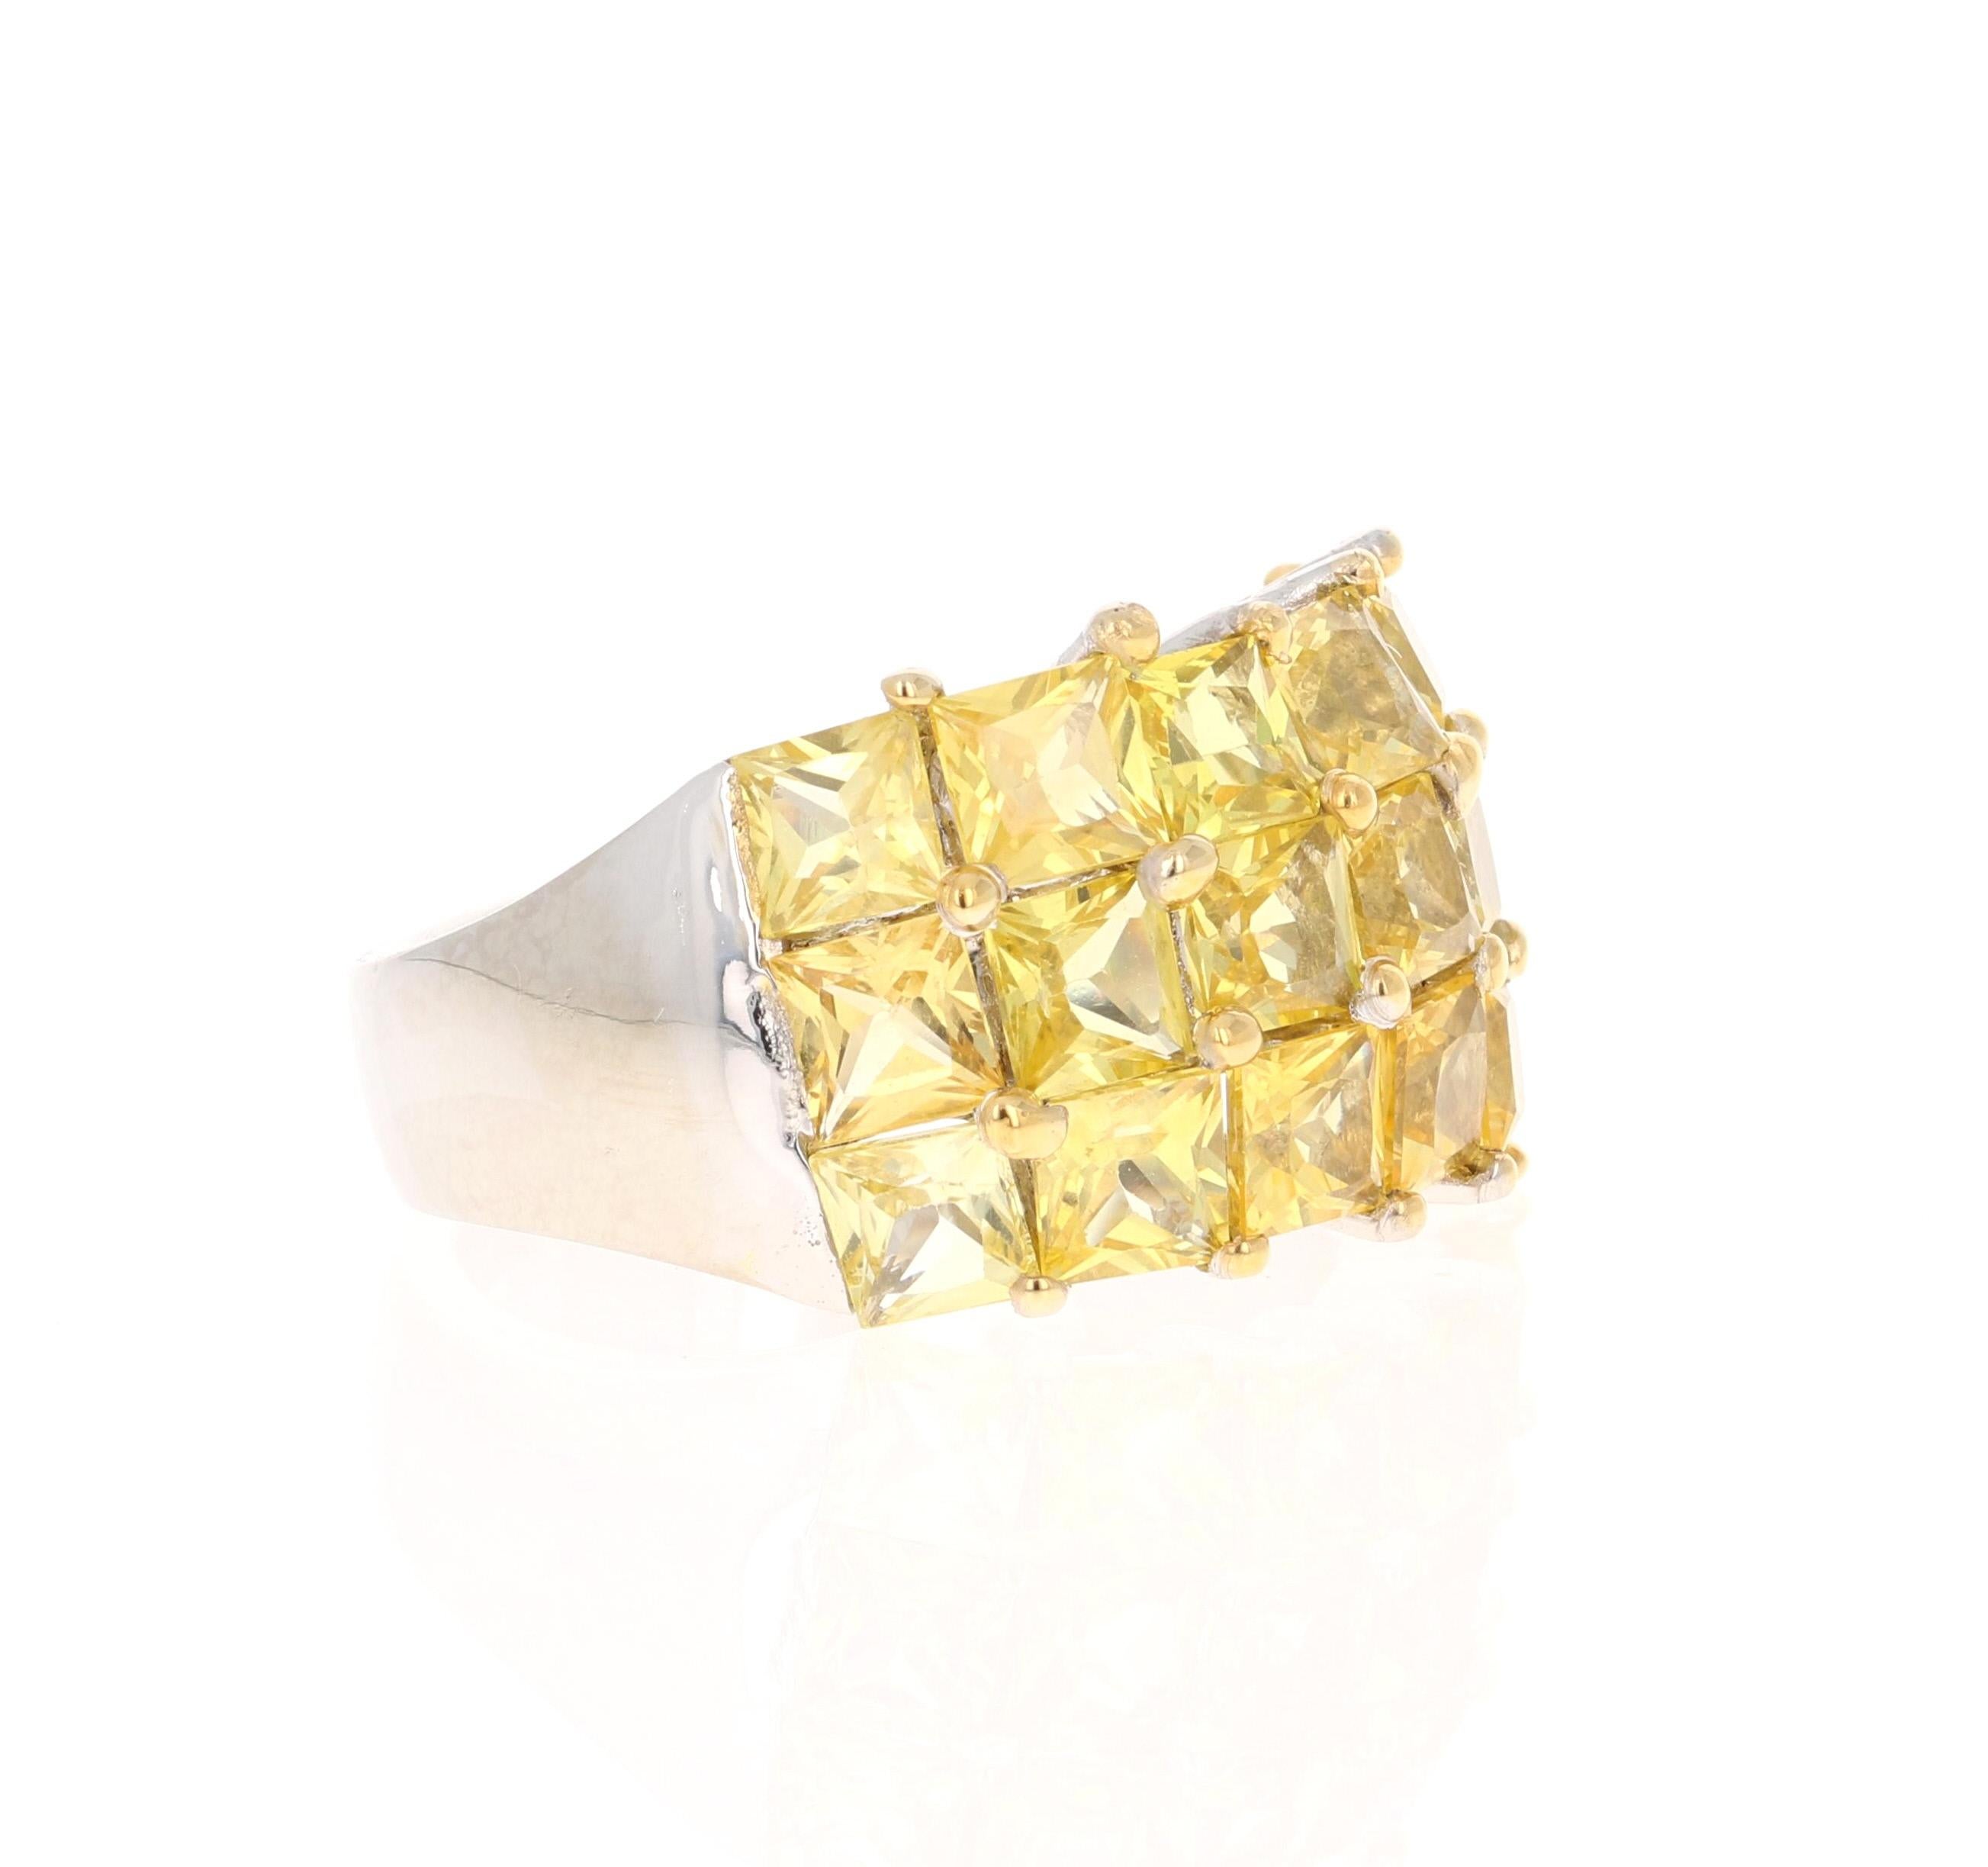 Dieser Ring hat 18 natürliche gelbe Saphire im Quadratschliff mit einem Gewicht von 7,39 Karat. 

Gefertigt aus 14 Karat Weißgold und wiegt ca. 11,2 Gramm 

Der Ring hat die Größe 7 und kann ohne Aufpreis in der Größe verändert werden!